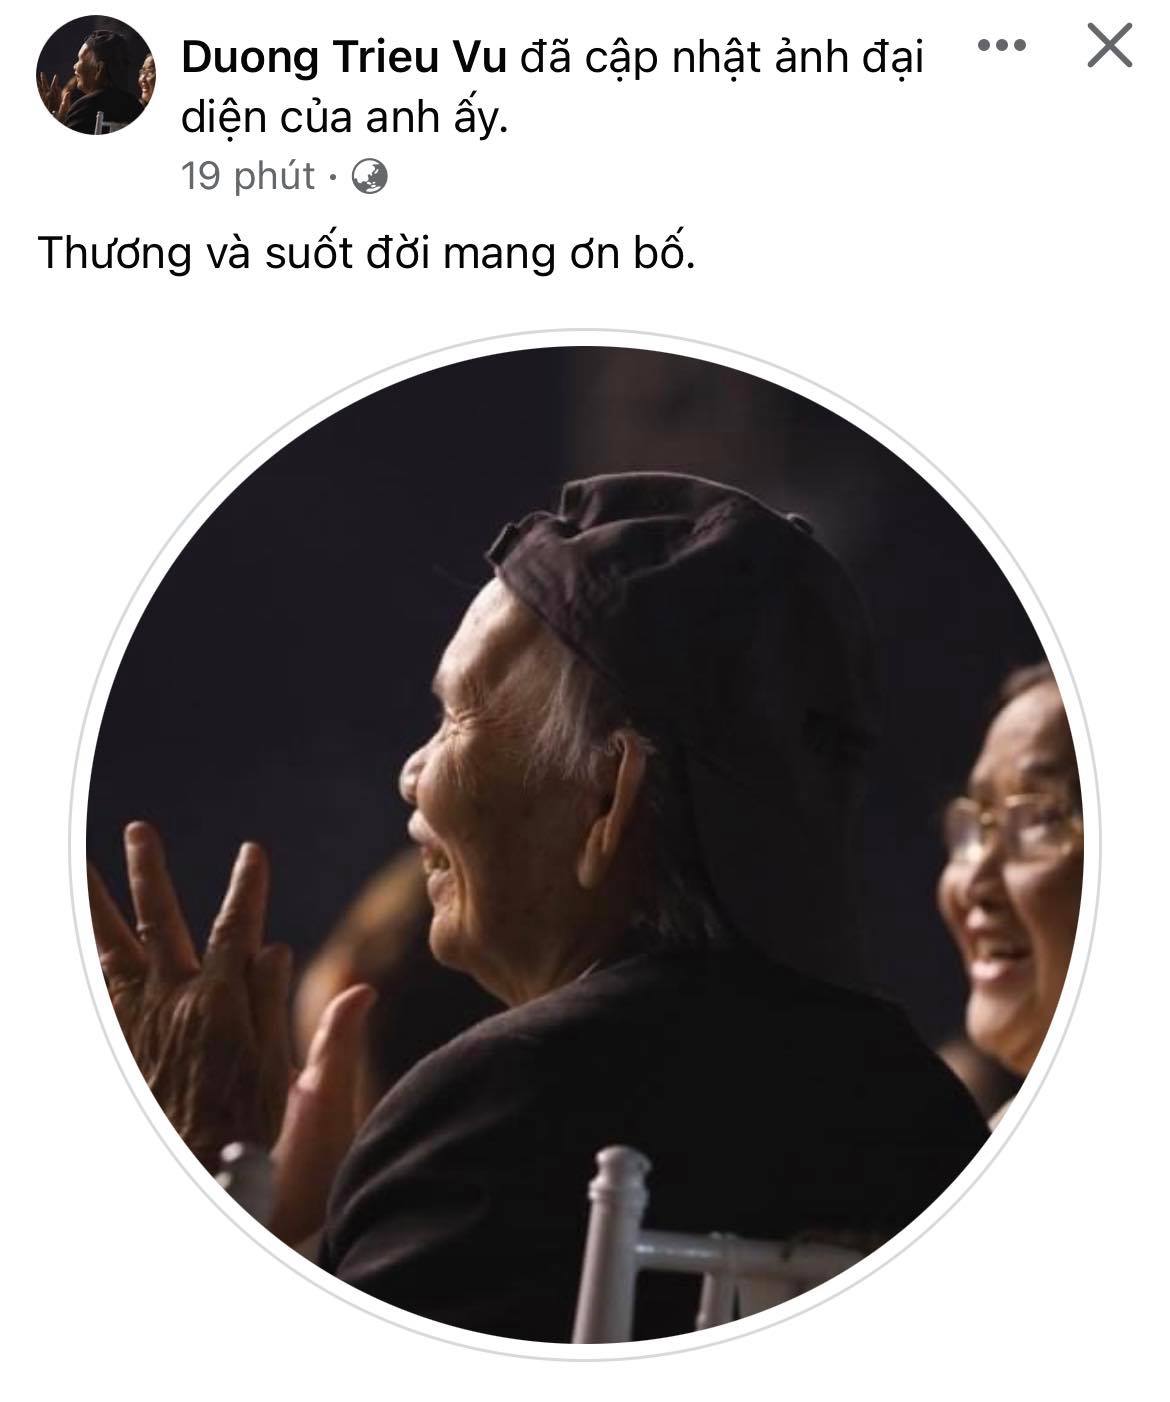 Bố nghệ sĩ Hoài Linh qua đời, Dương Triệu Vũ, Đàm Vĩnh Hưng và các sao Việt nghẹn ngào tiễn biệt - Ảnh 2.